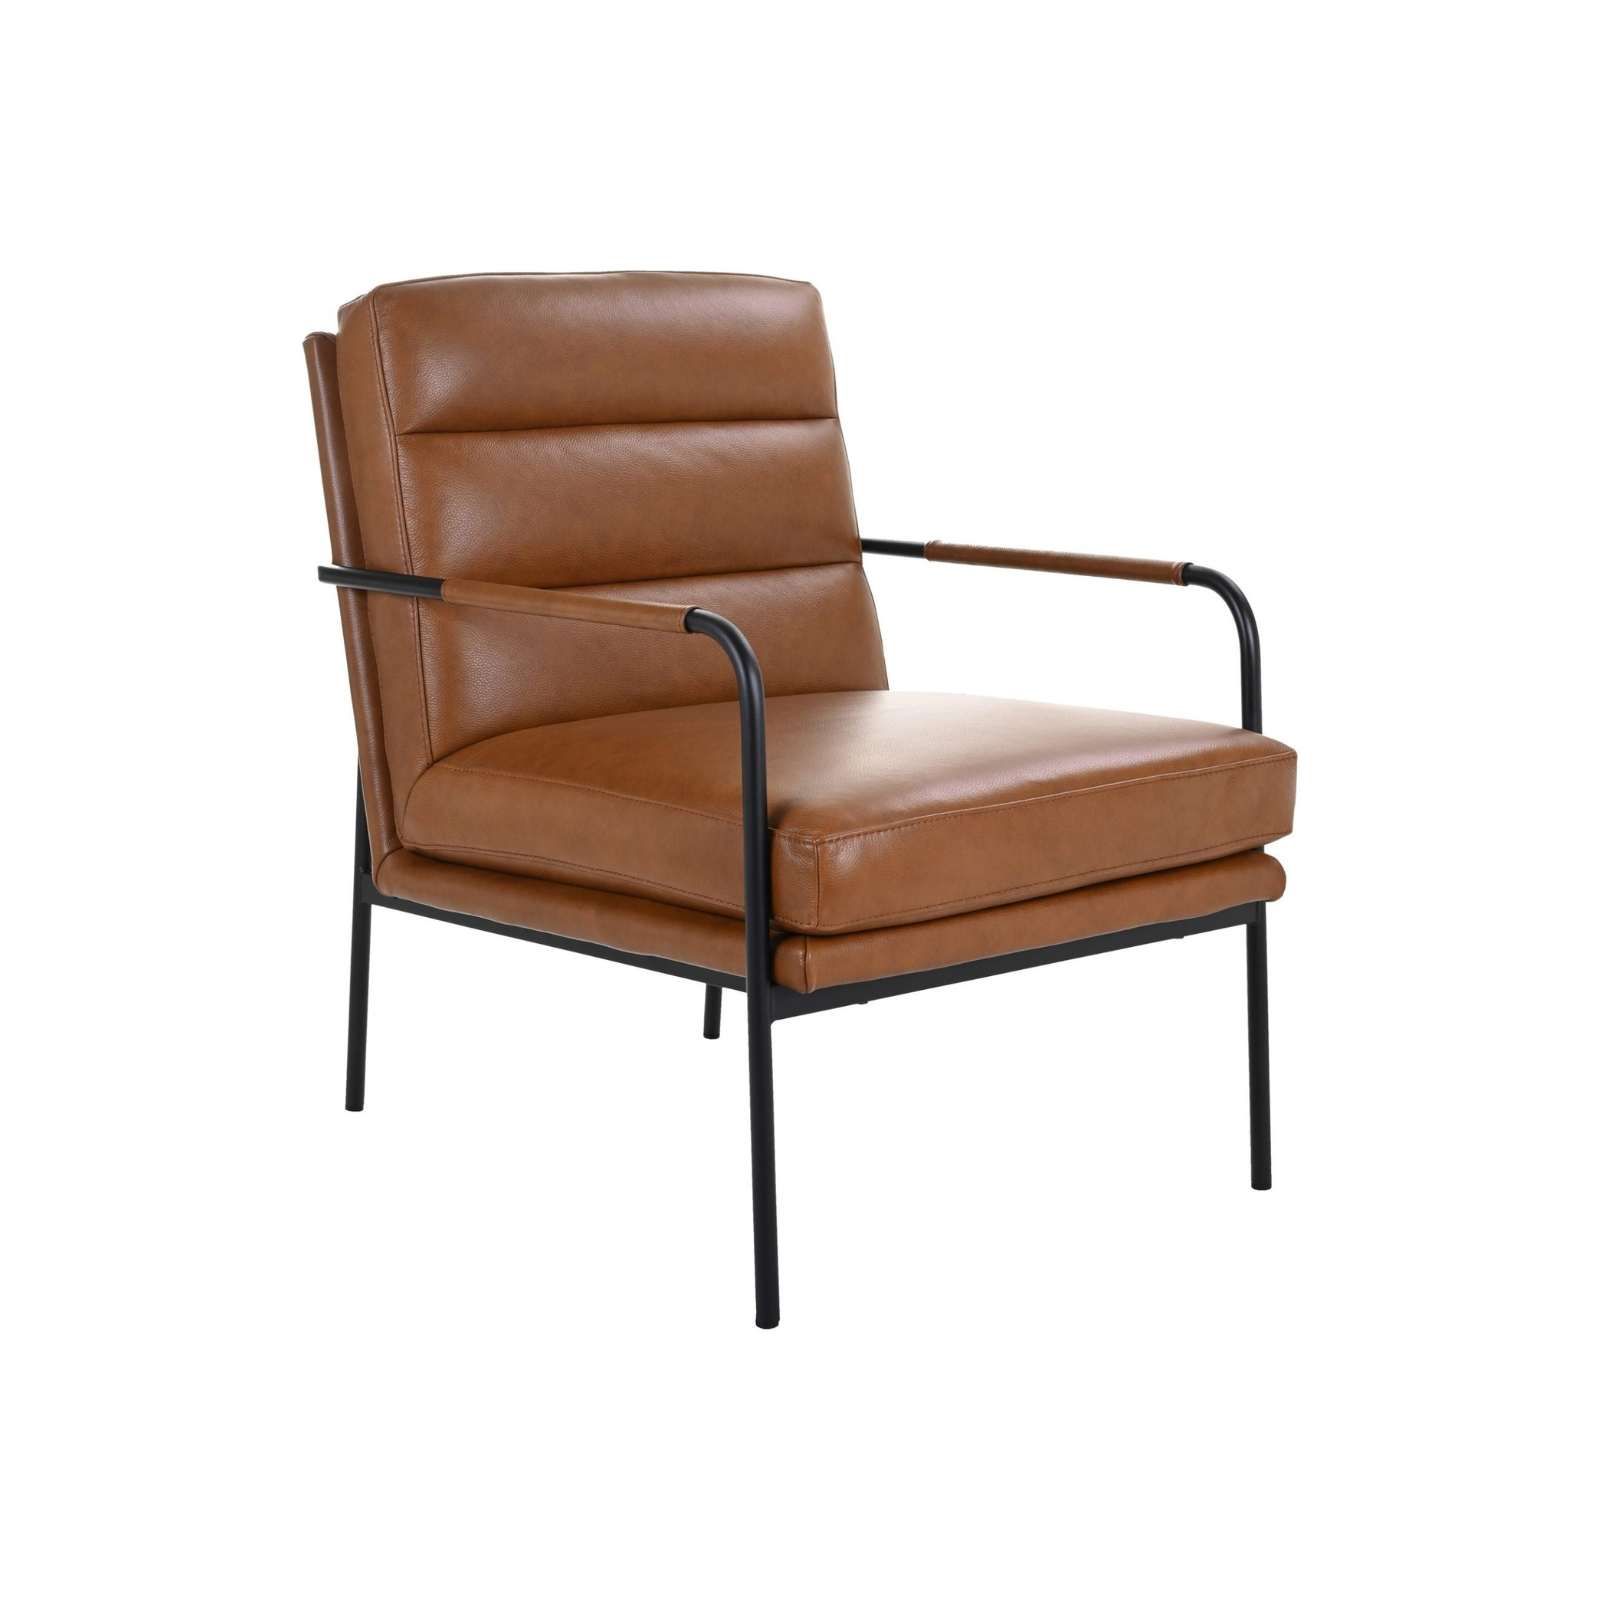 FLOOR MODEL - Valerie Lounge Chair